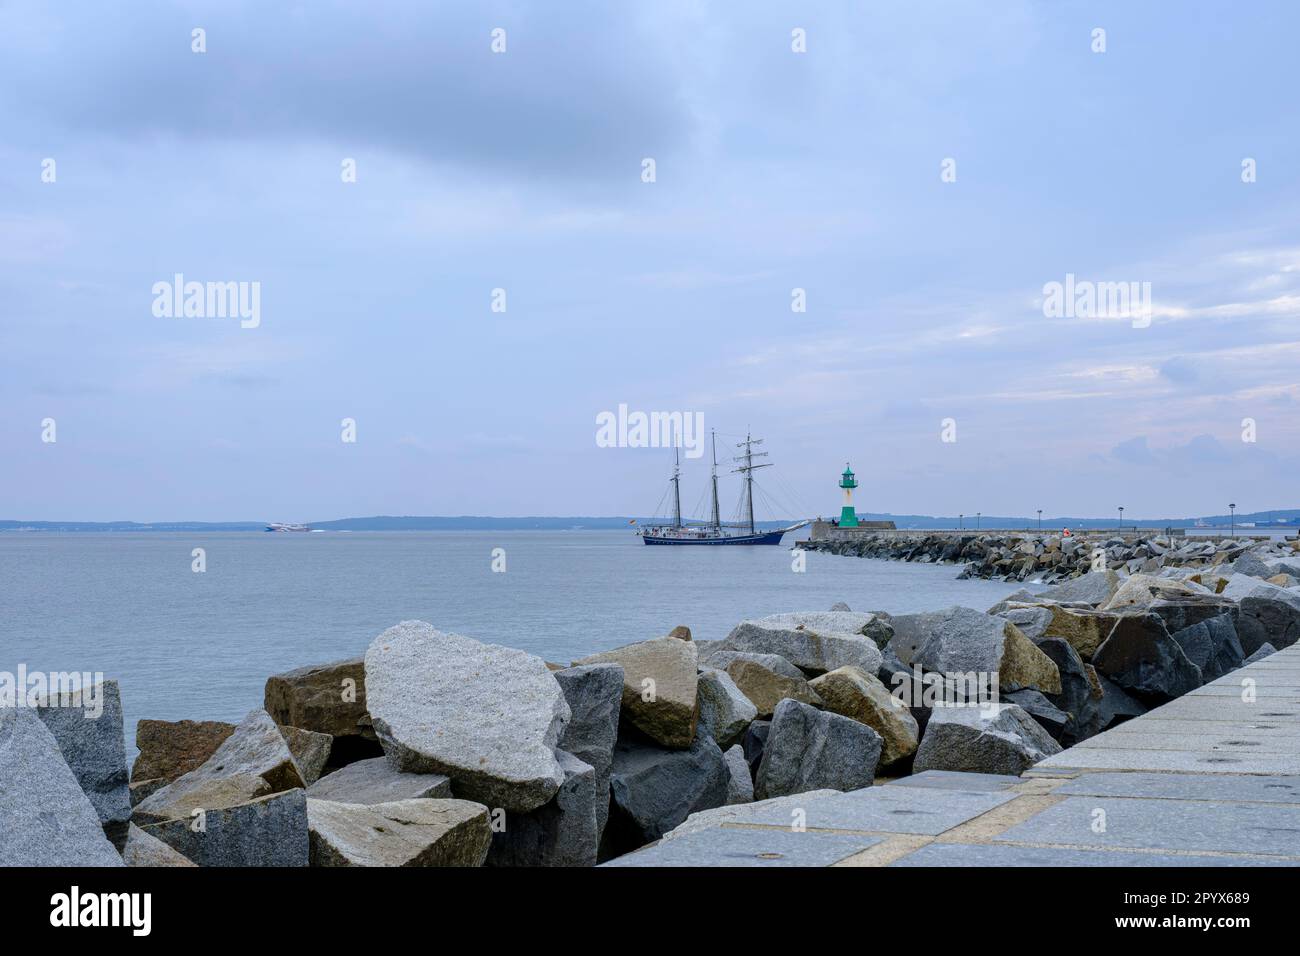 Scena marittima sulla talpa nel porto della città di Sassnitz, Meclemburgo-Pomerania occidentale, Rugen Island, Germania, Europa. Foto Stock